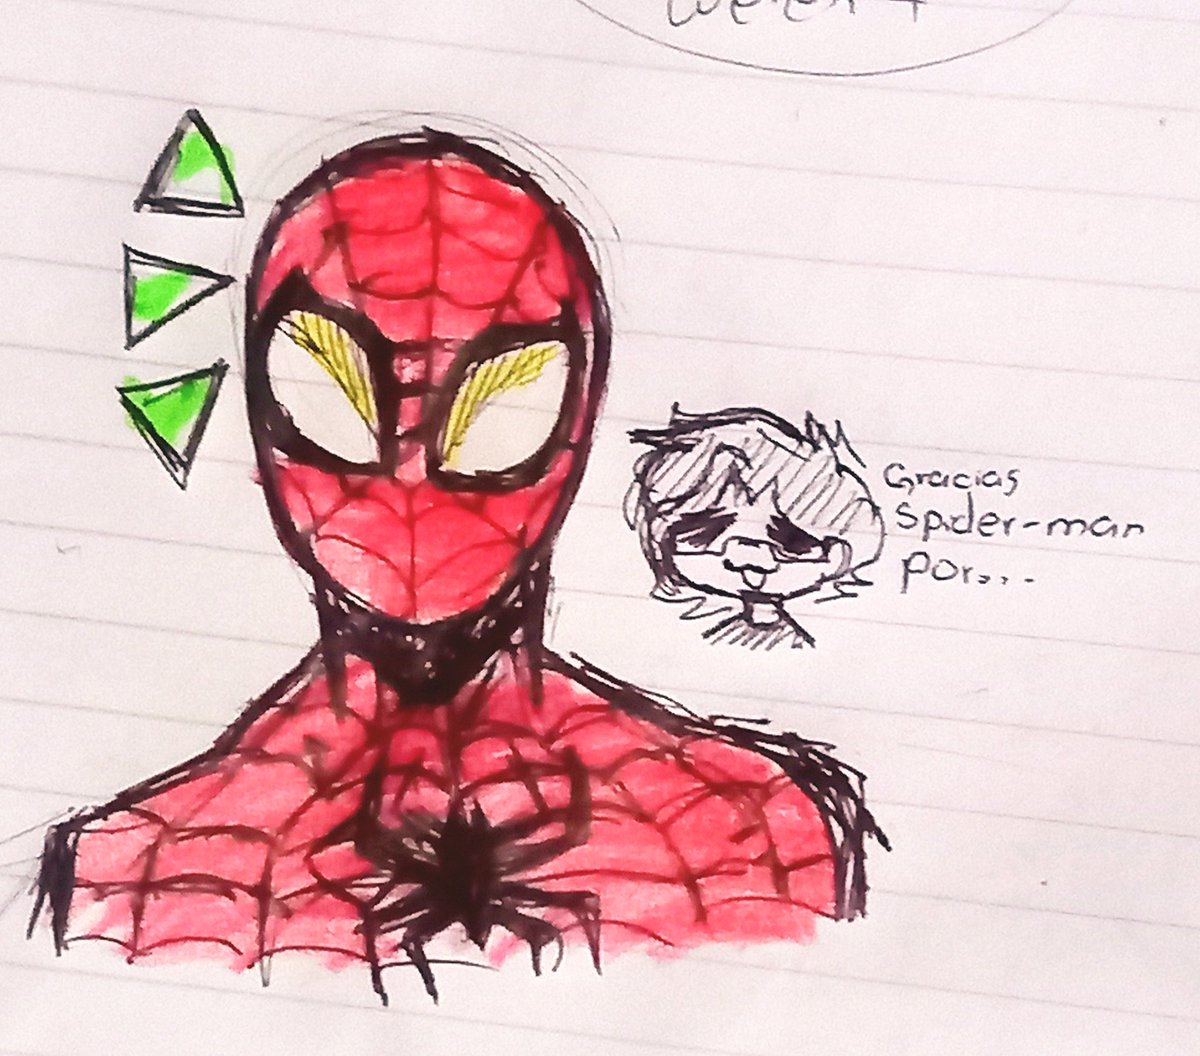 Some Spider-Man doodles for you ✨
.
.
.
[#SpiderMan #SpiderVerse #marvelspiderman #fanart ]